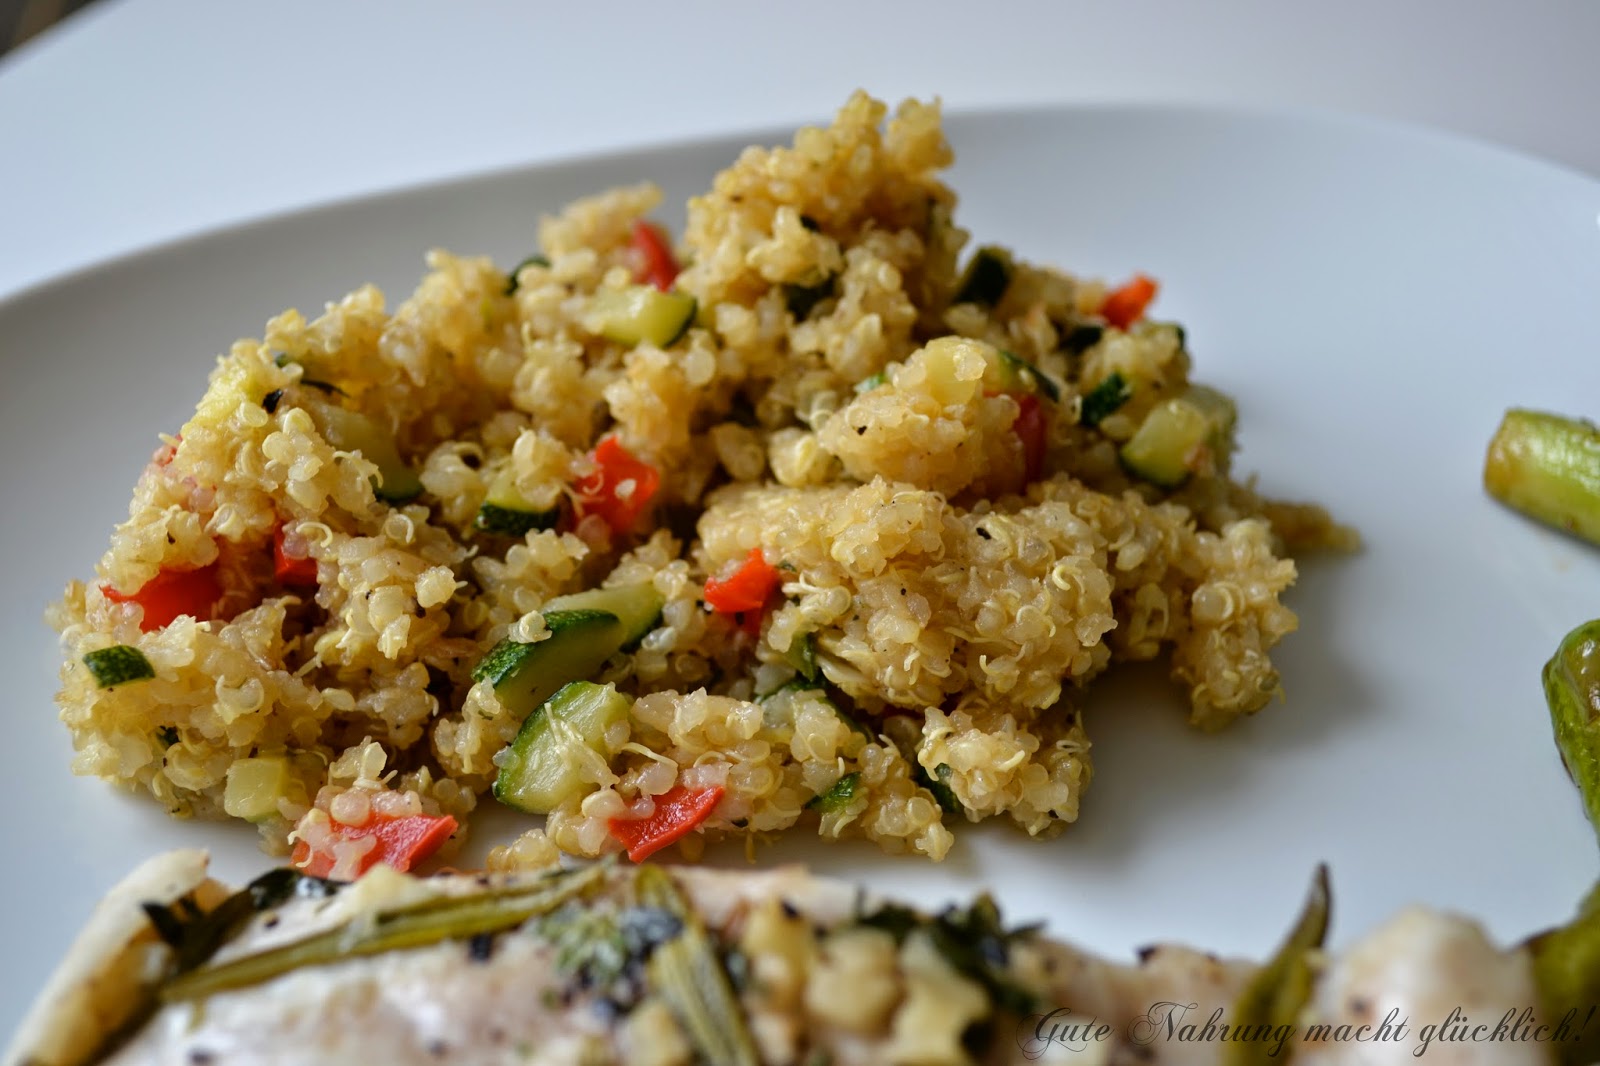 Gute Nahrung macht glücklich : Quinoa mit mediteranem Gemüse